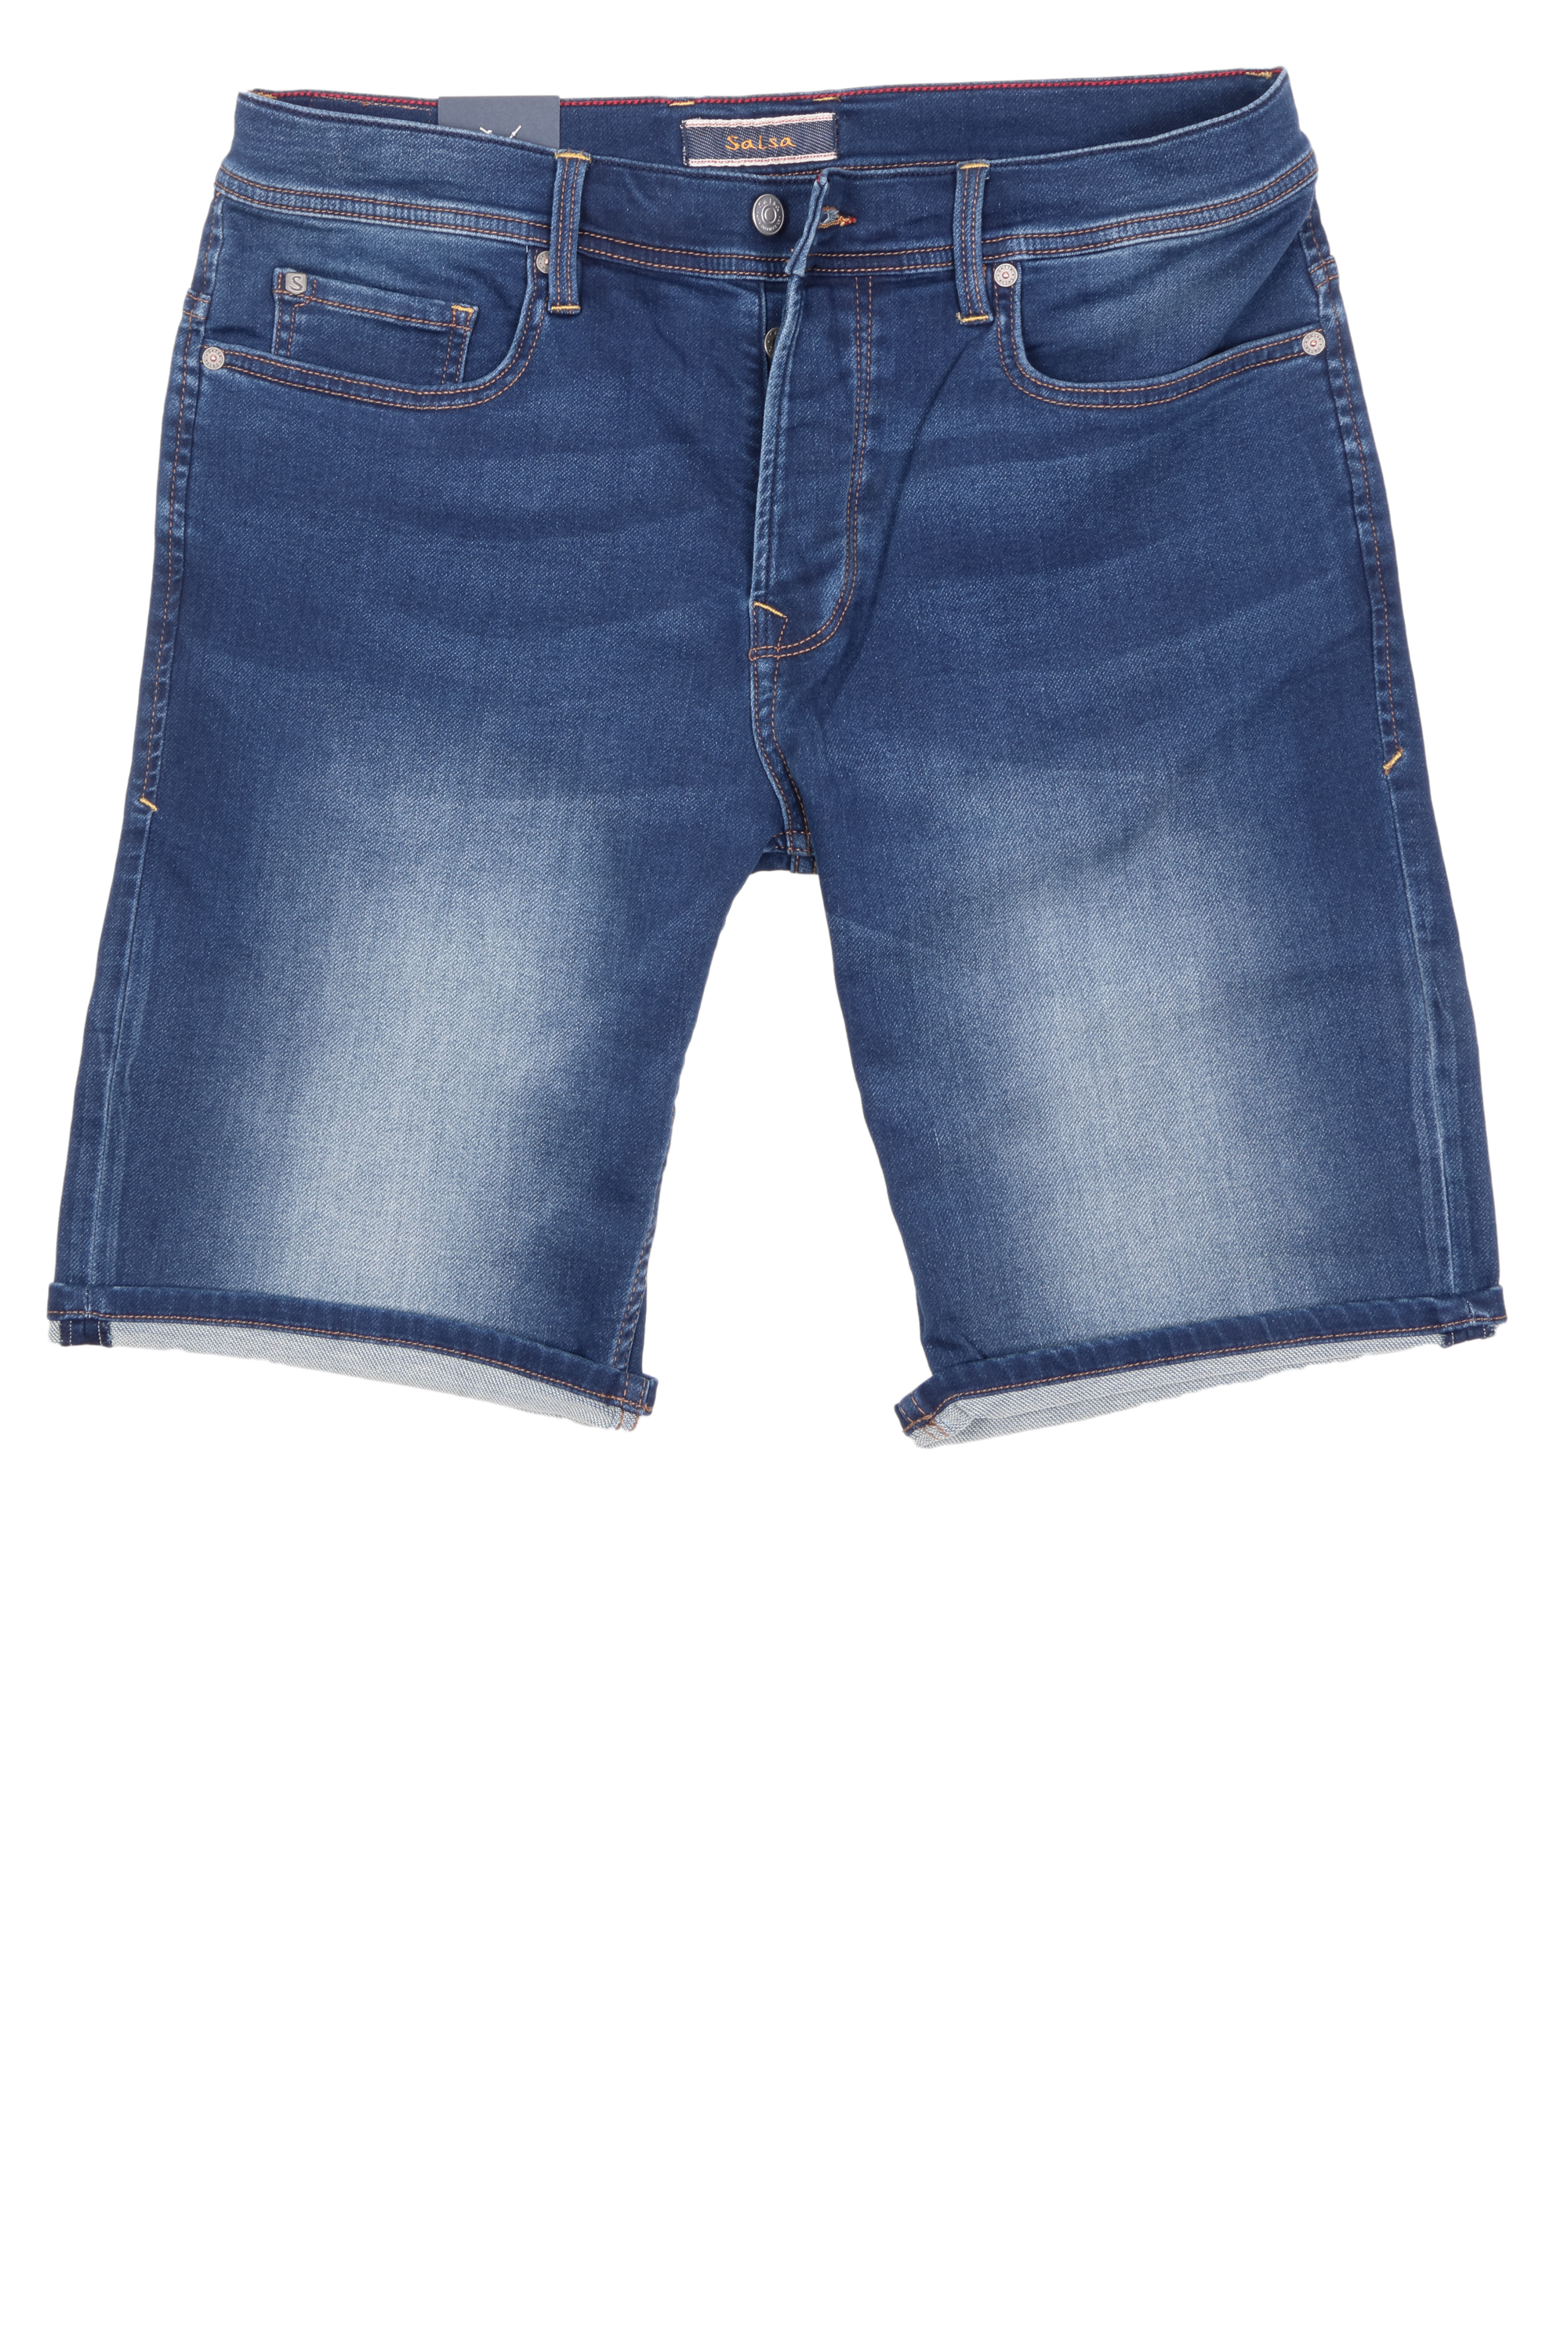 Salsa Herren Jeans Shorts Jog-Denim - blau 36